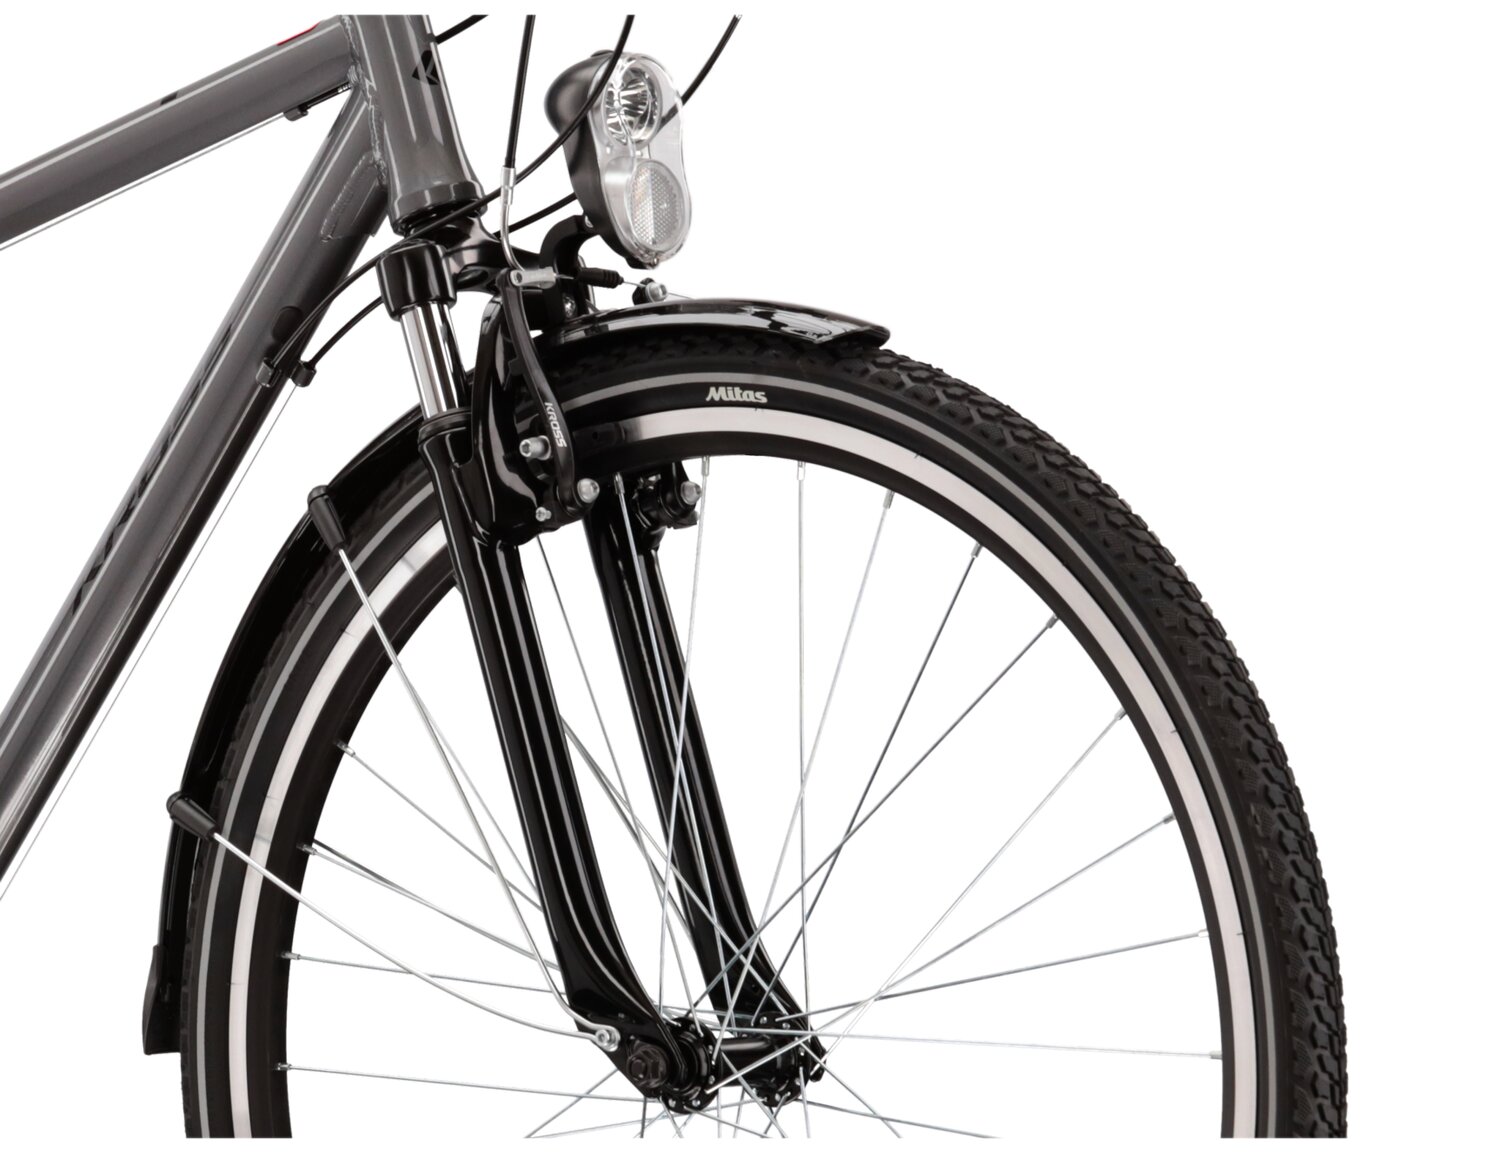 Aluminowa rama, amortyzowany widelec KROSS oraz opony Wanda w rowerze damskim KROSS Trans 2.0 